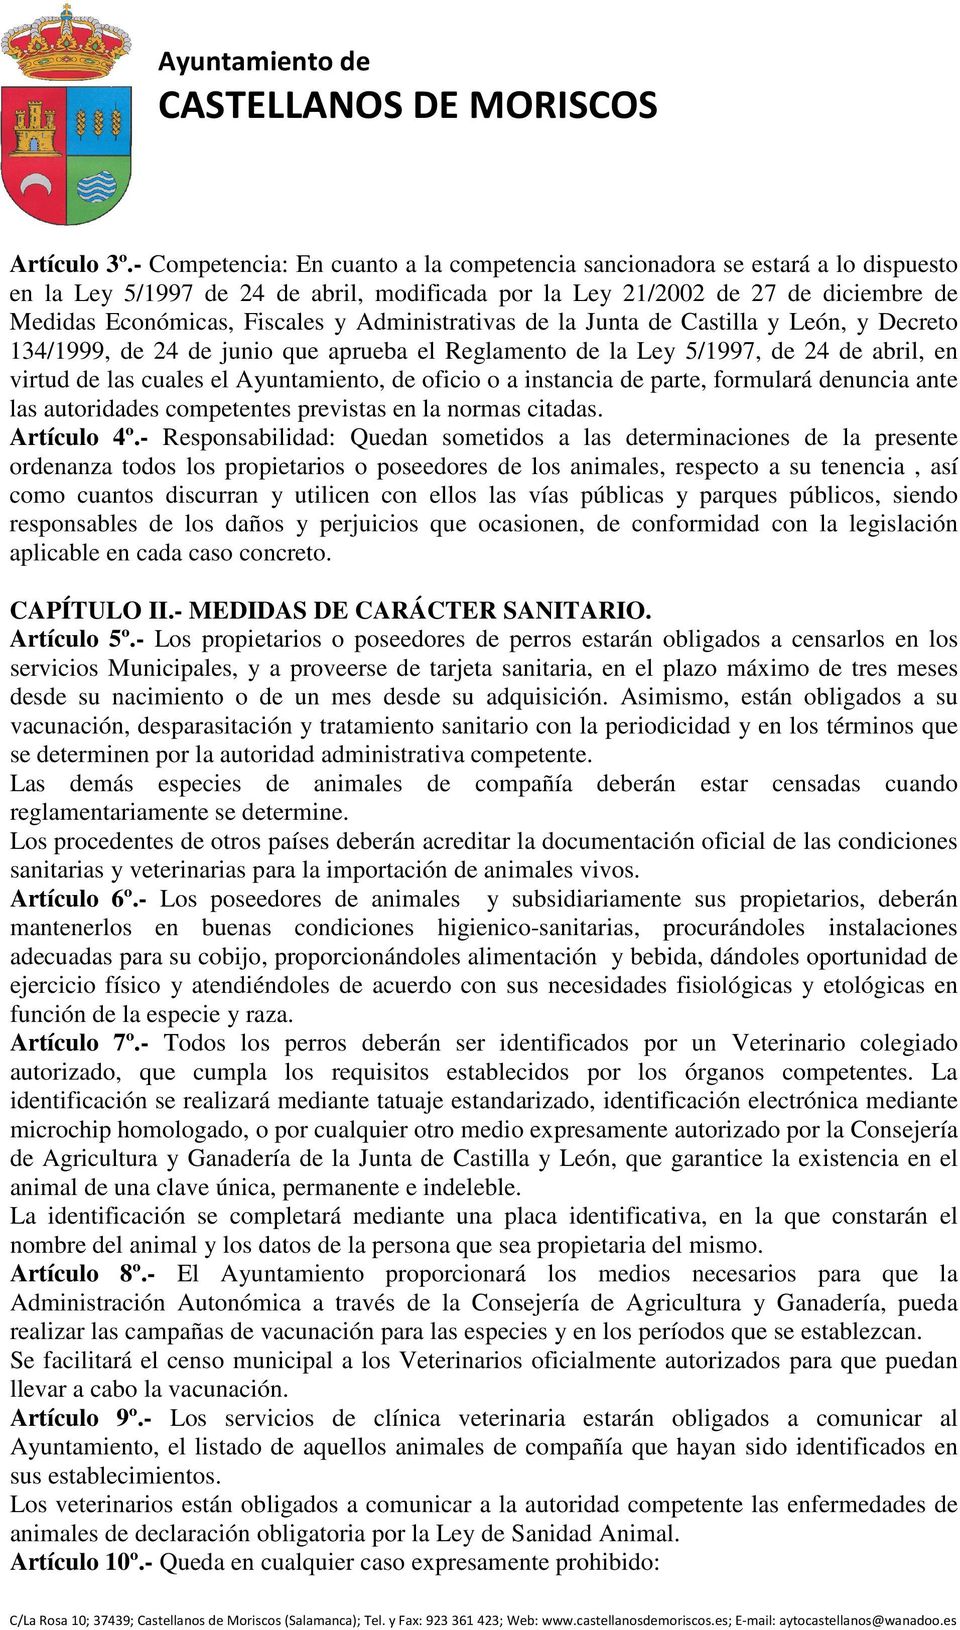 Administrativas de la Junta de Castilla y León, y Decreto 134/1999, de 24 de junio que aprueba el Reglamento de la Ley 5/1997, de 24 de abril, en virtud de las cuales el Ayuntamiento, de oficio o a